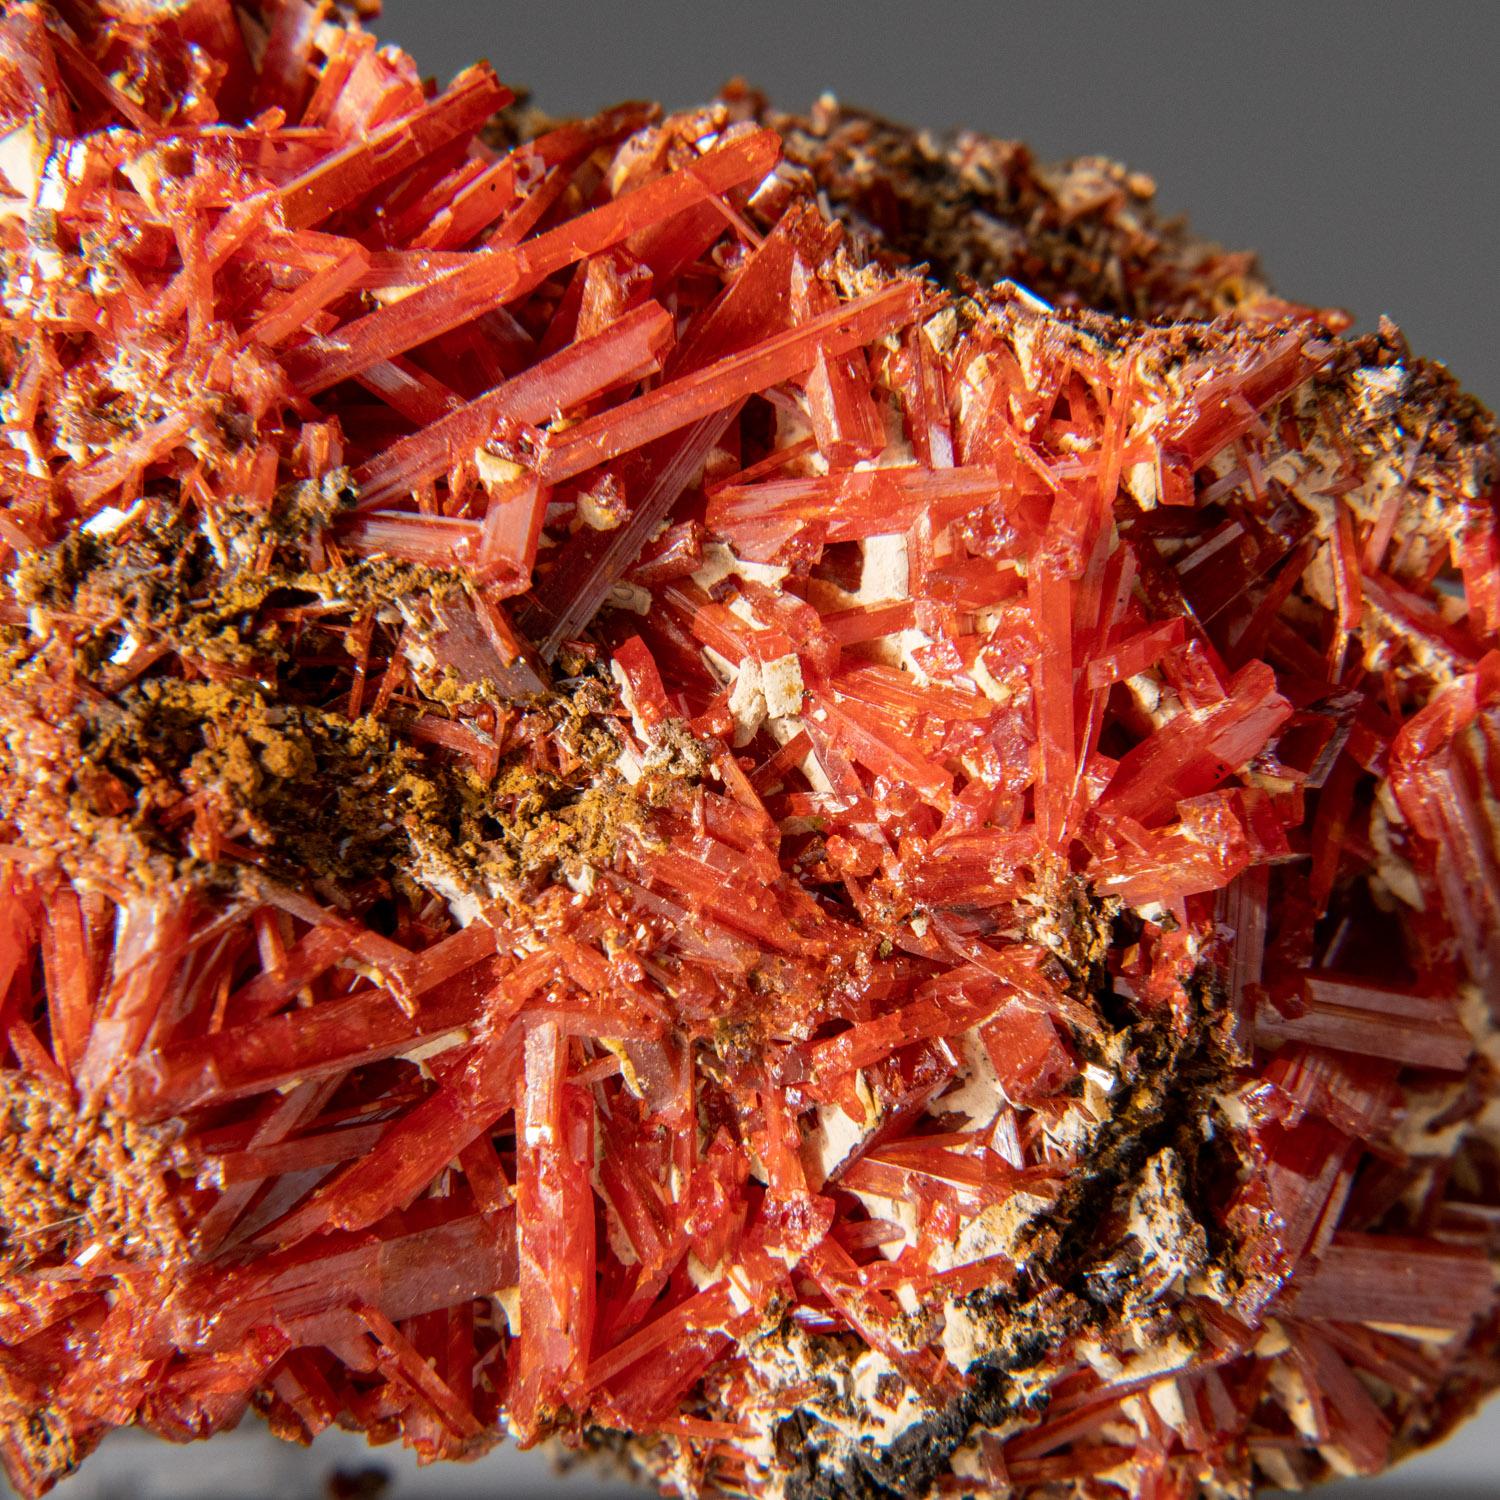 Ce cristal unique de Crocoite rouge-orange en forme d'aiguille provient de la mine Red Lead, Dundas, Tasmanie, Australie. Les cristaux lustrés et propres sont très visibles sur la matrice, ce qui en fait une pièce remarquable pour toute collection